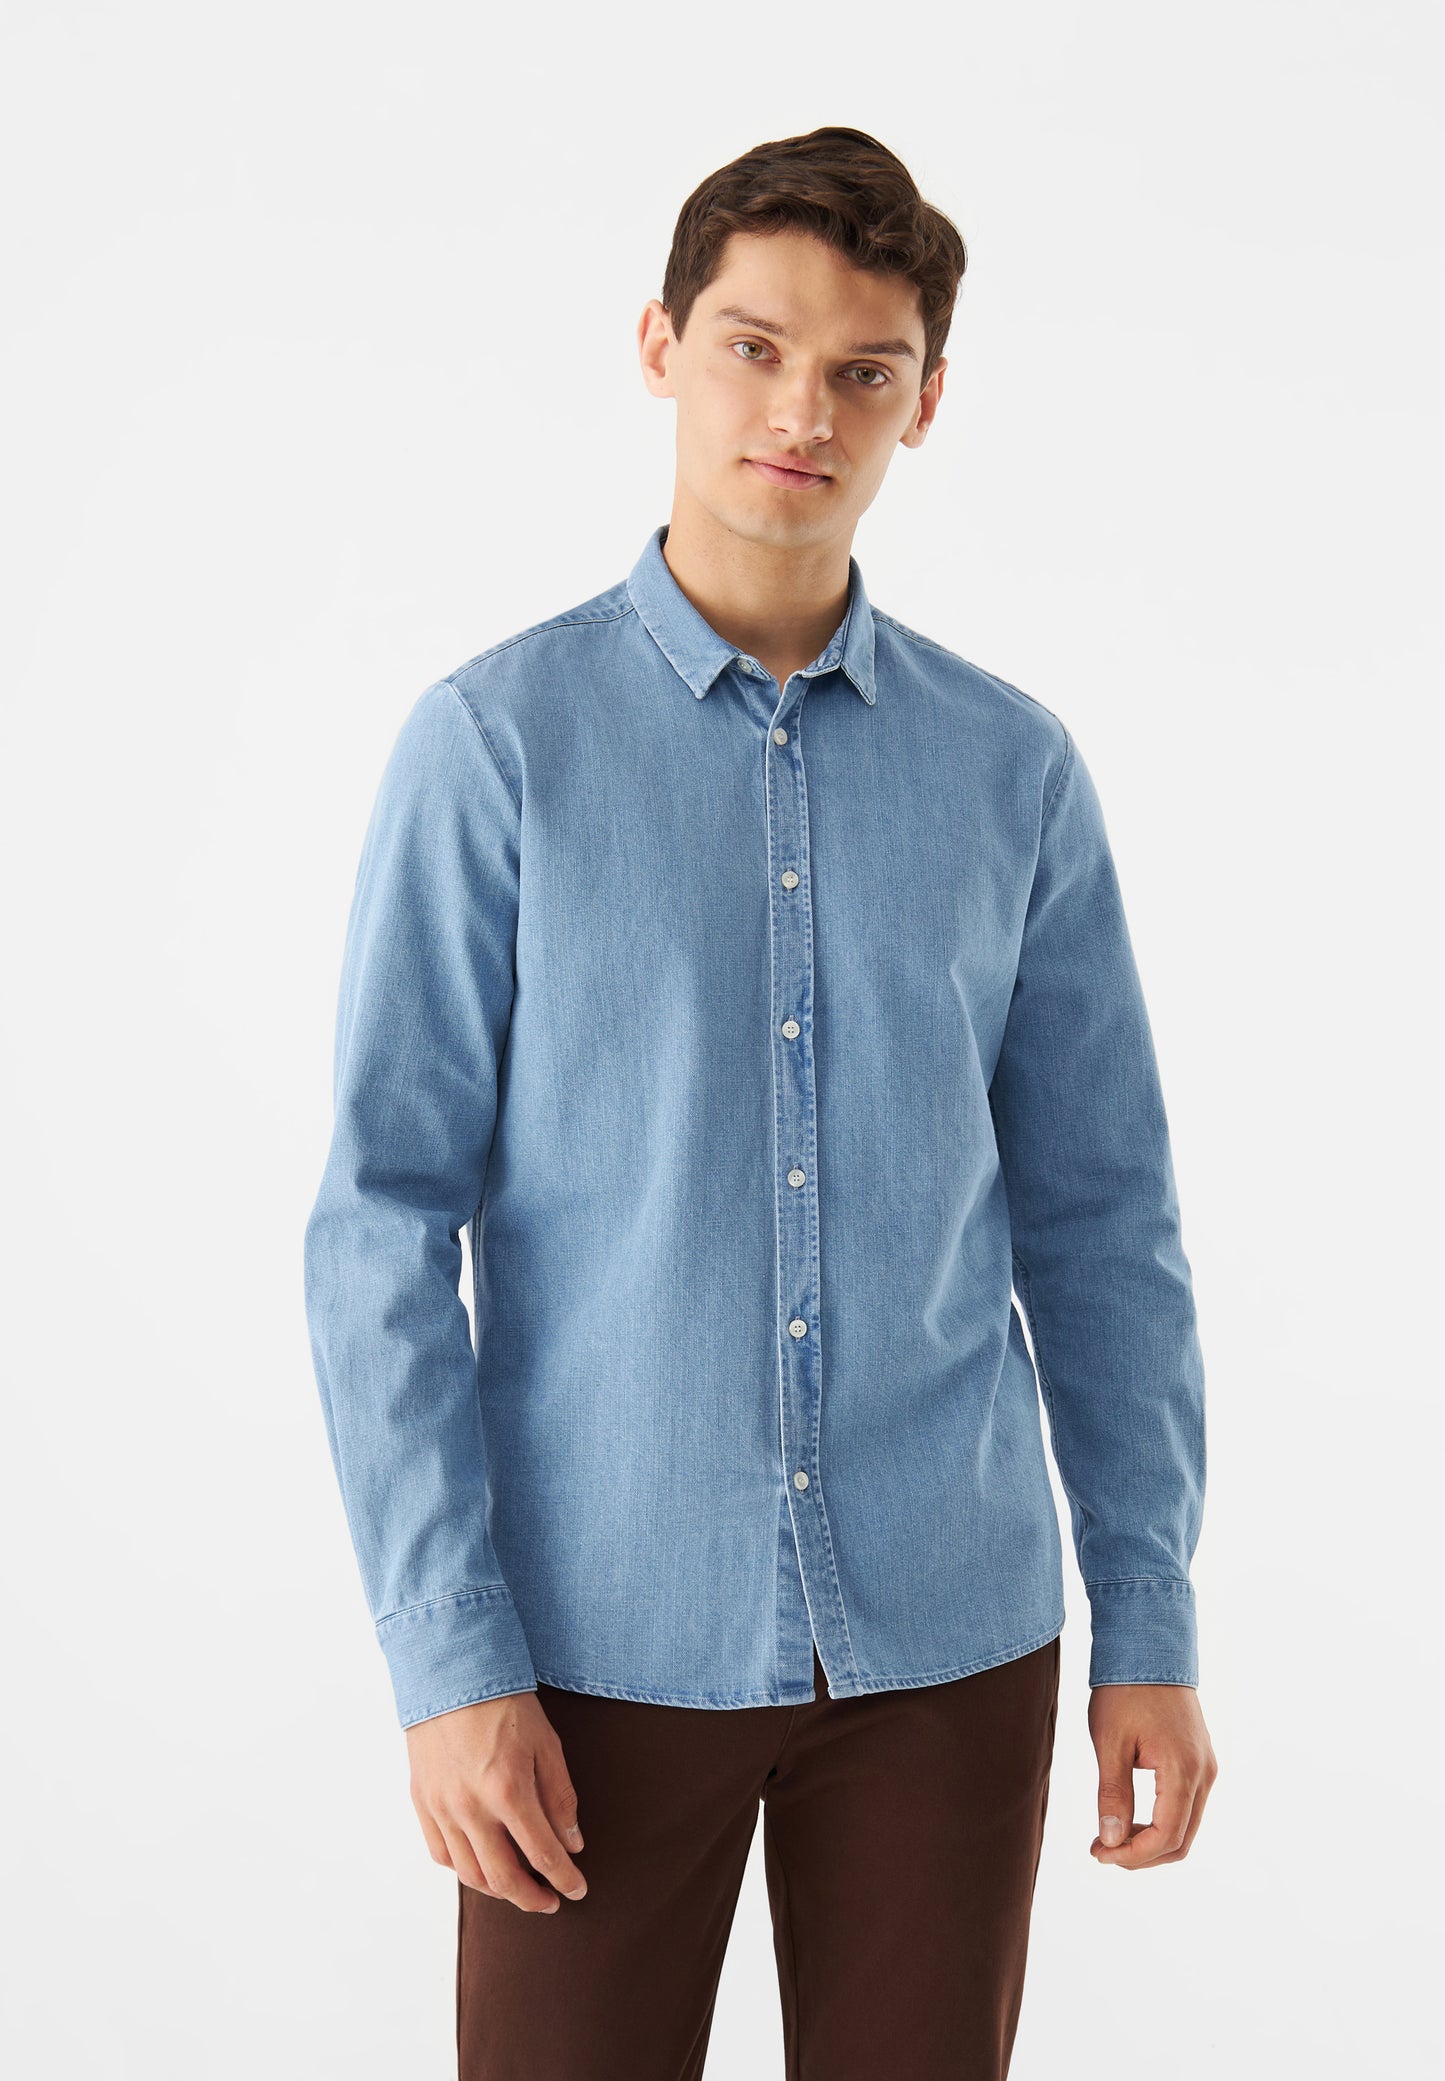 gbdevis jeanshemd, light blue (denim), herren - givn